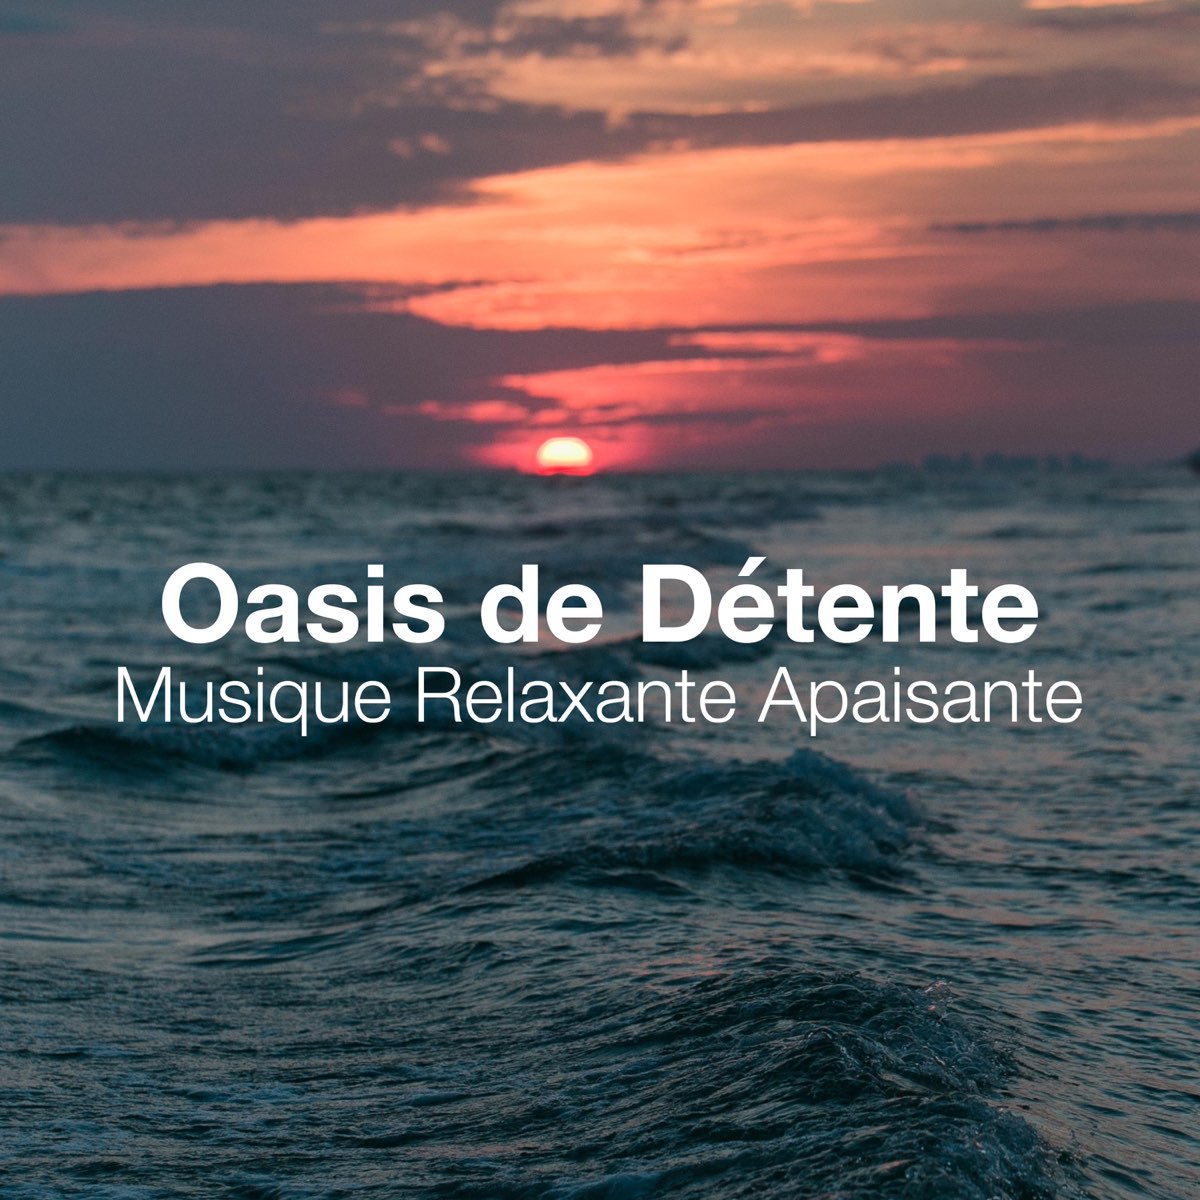 Oasis de Détente: Musique Relaxante Apaisante, Musique Douce Pour